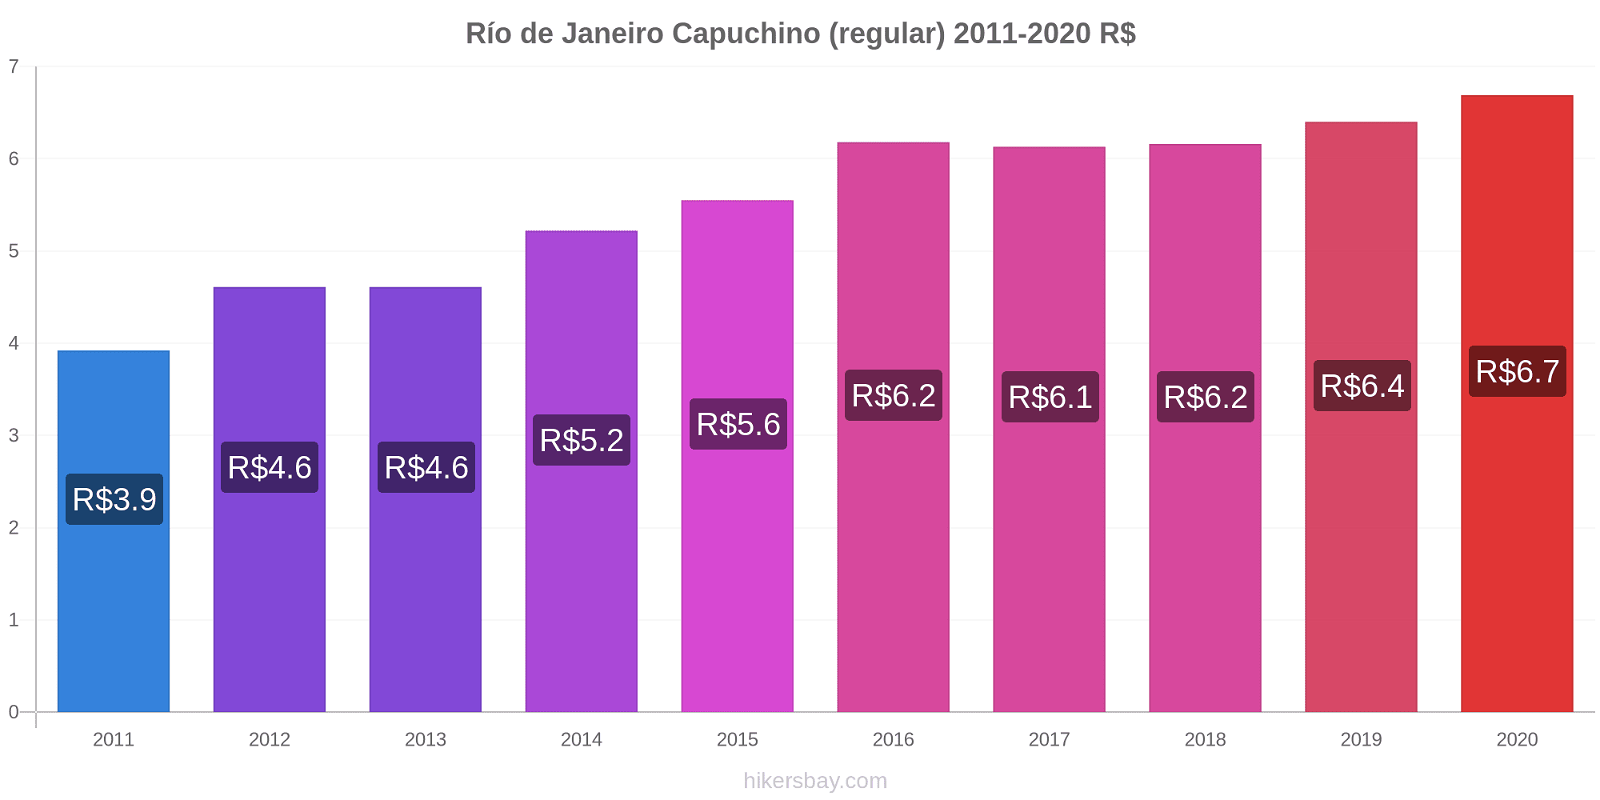 Río de Janeiro cambios de precios Capuchino (regular) hikersbay.com